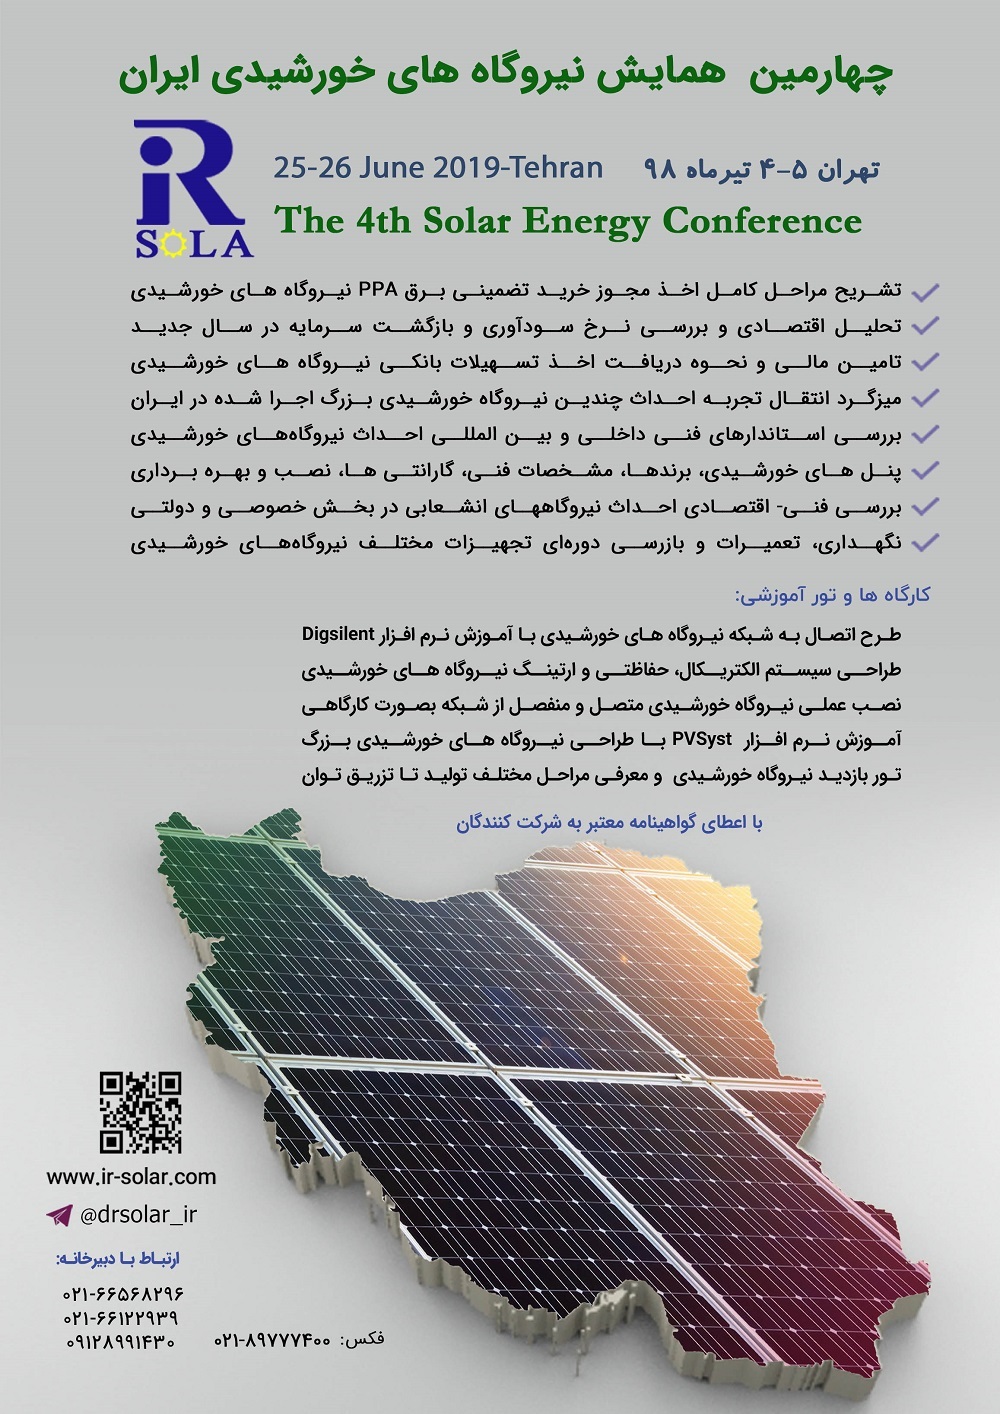 برگزاری چهارمین همایش بزرگ نیروگاه های خورشیدی